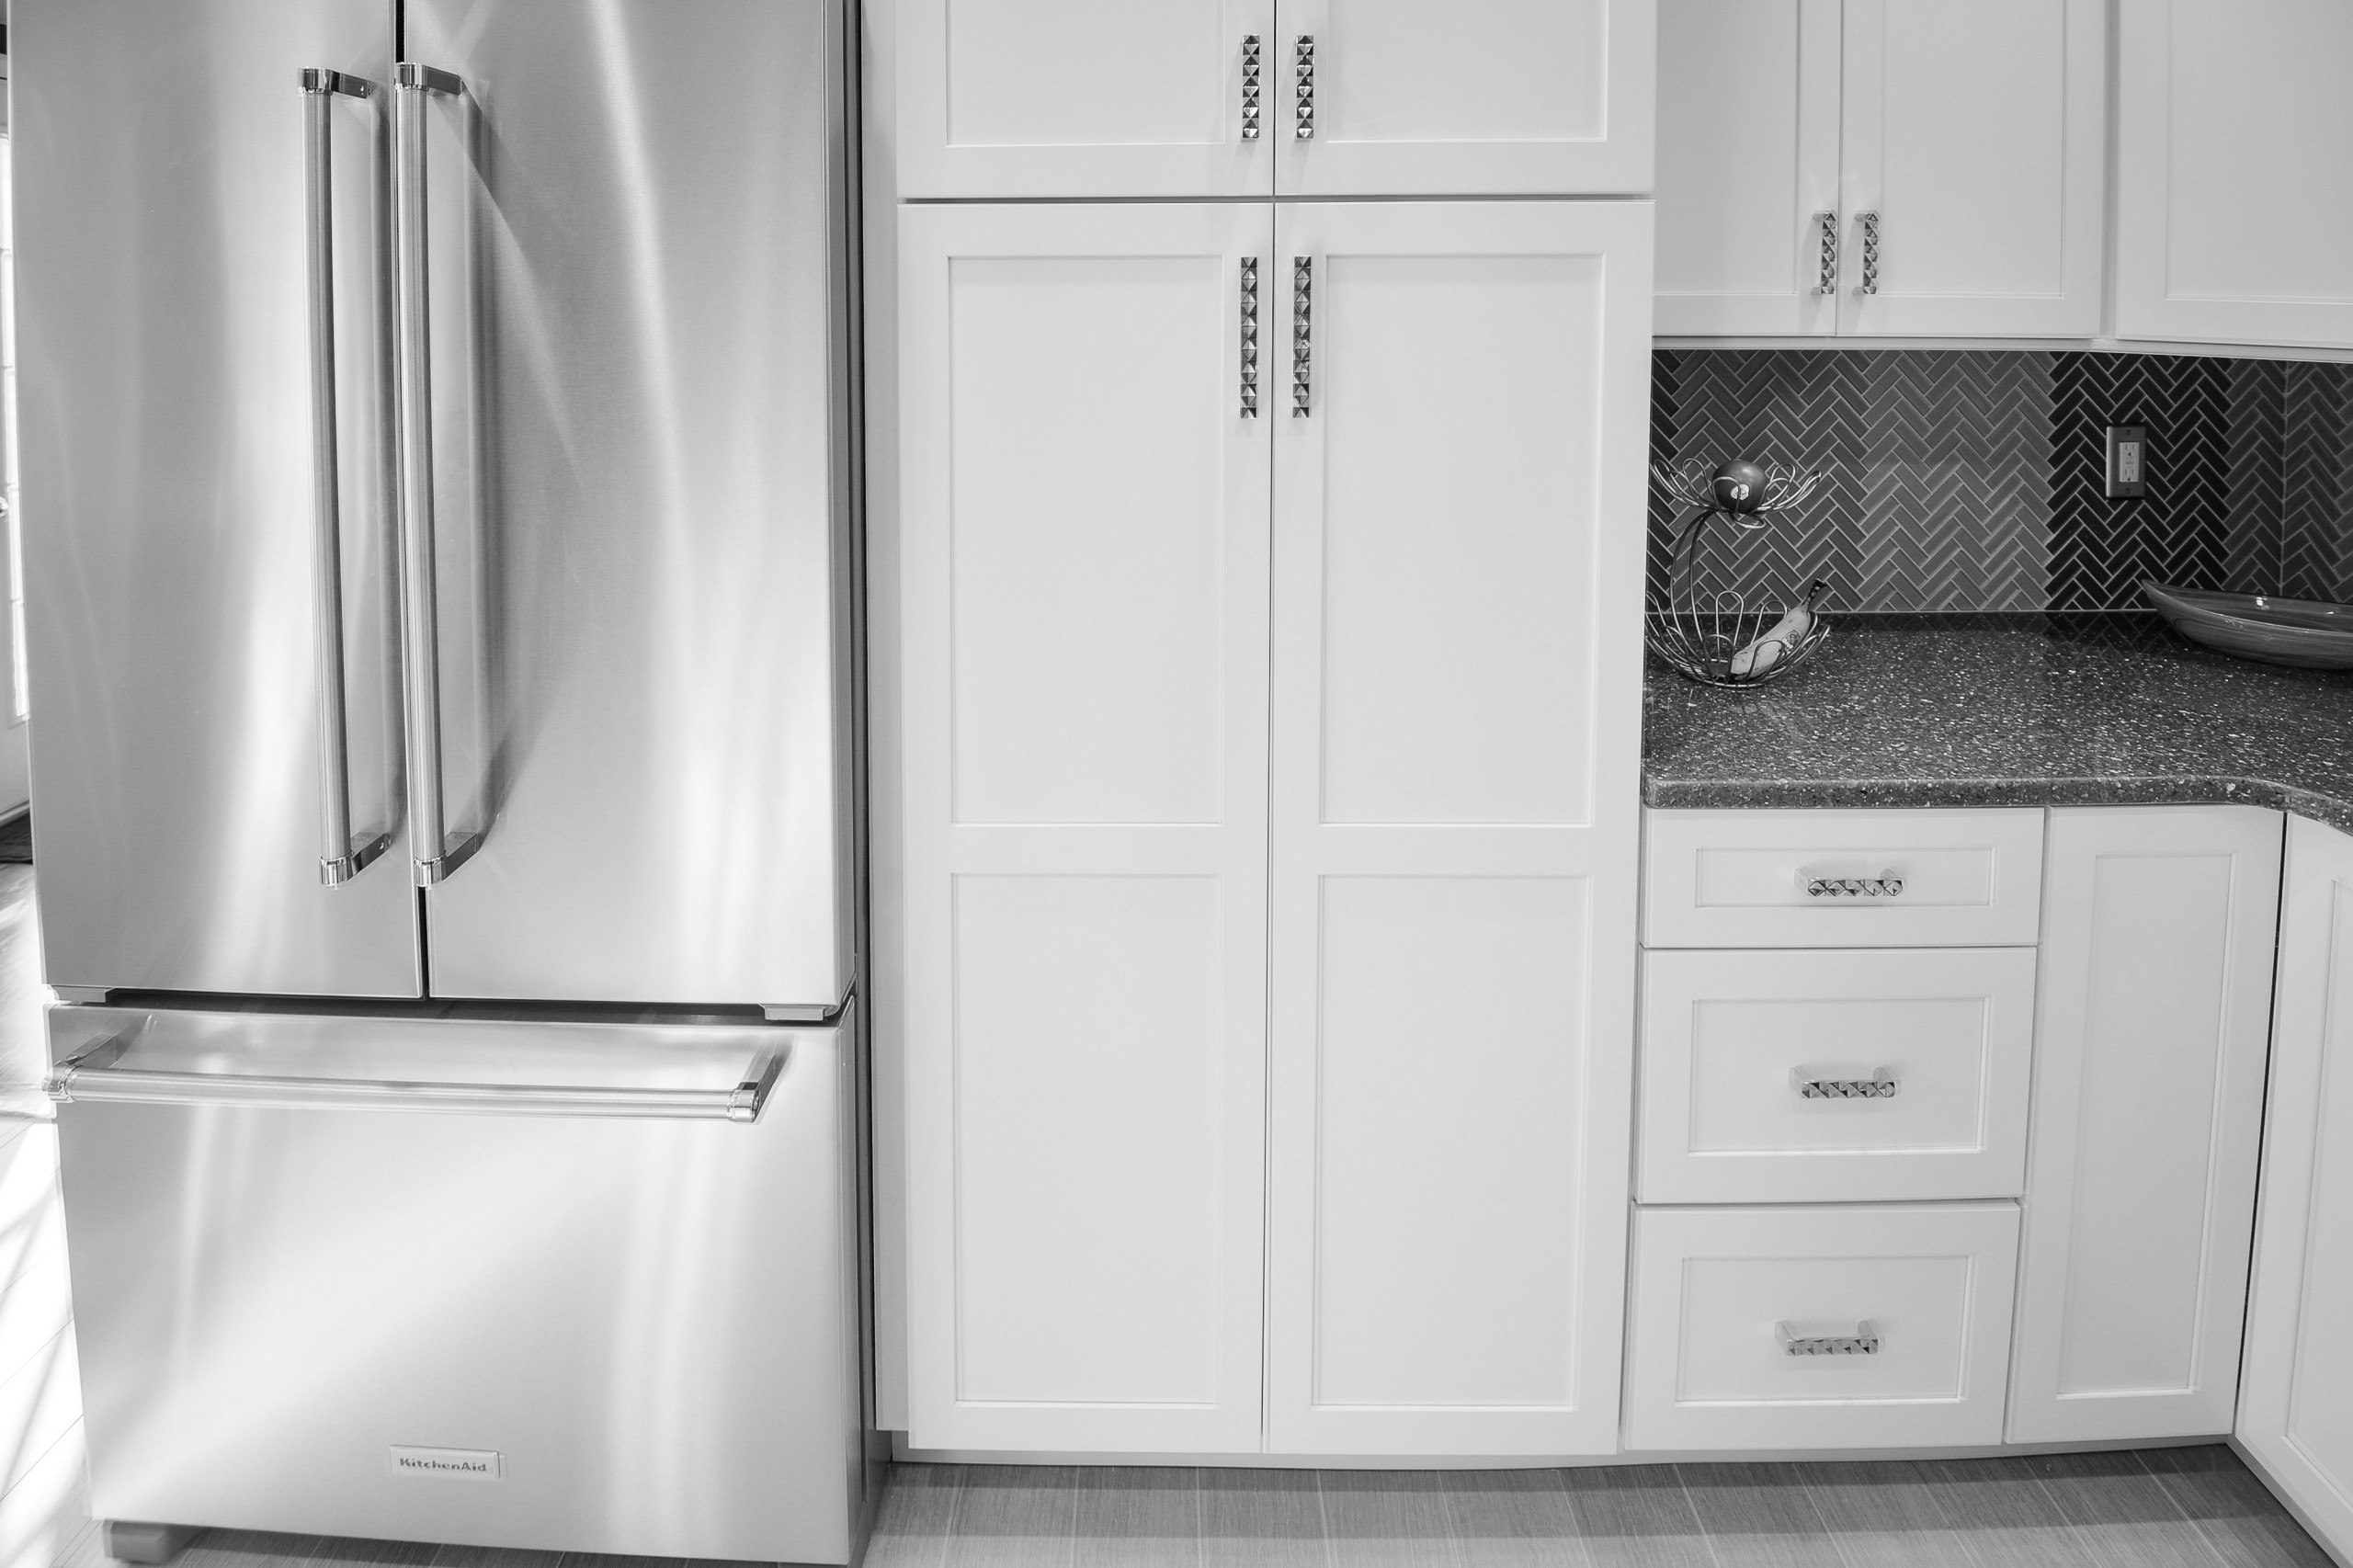 White/Grey Kitchen Rennovation